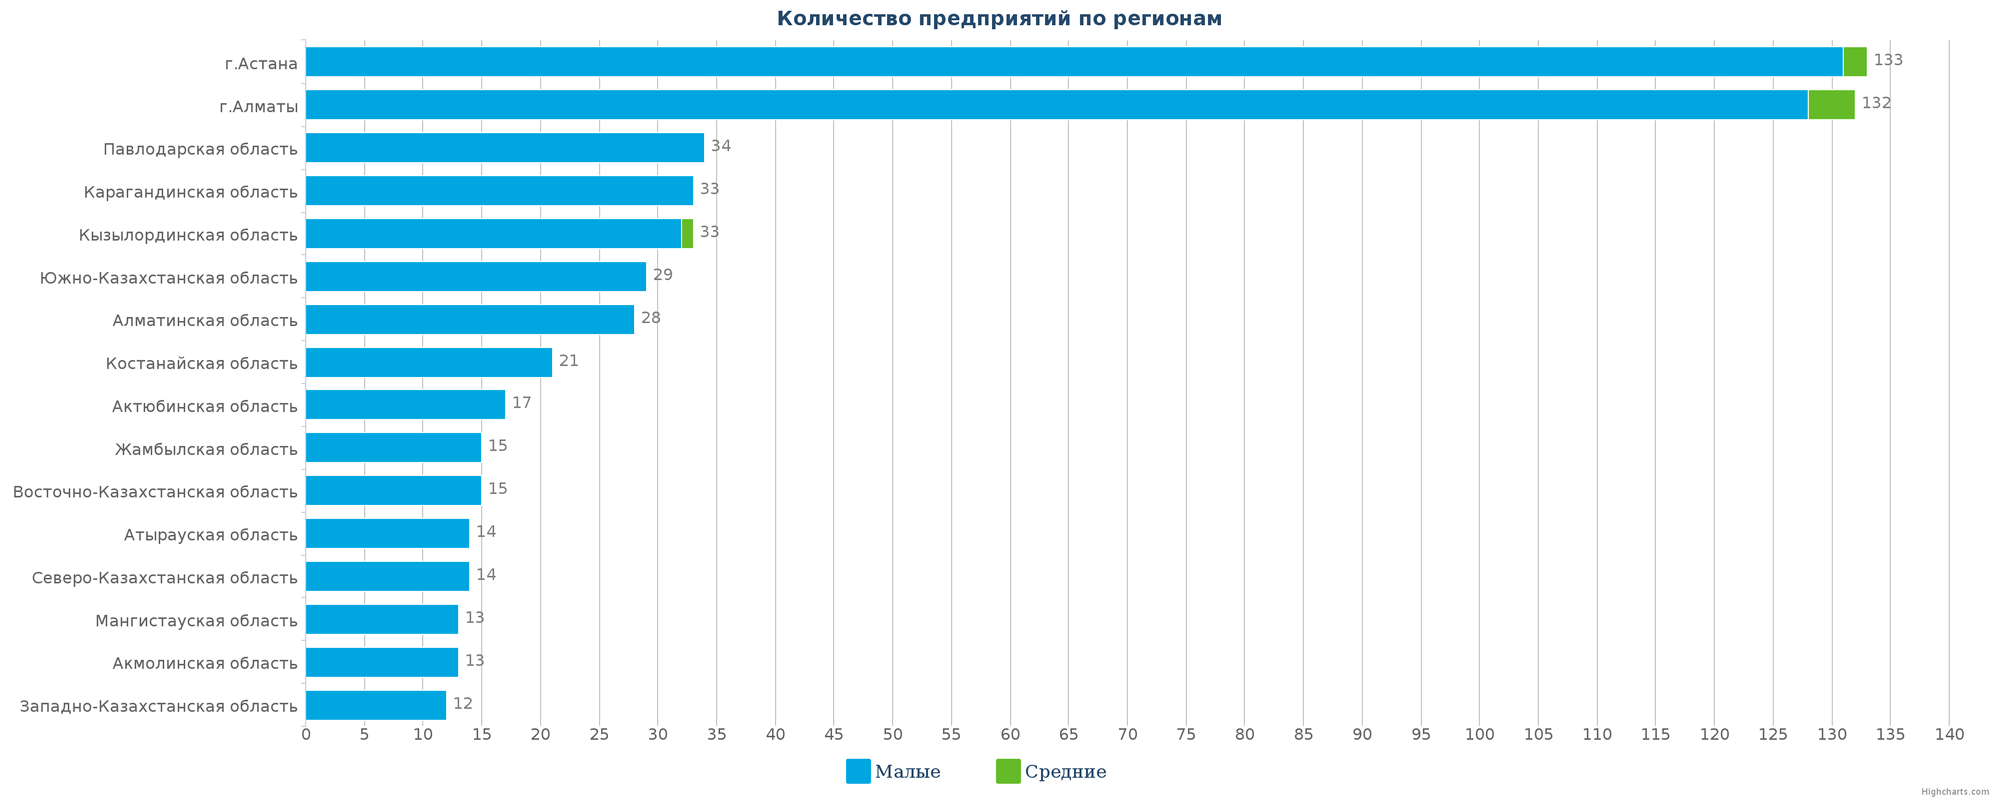 Количество новых юридических лиц в реестре по регионам Казахстана